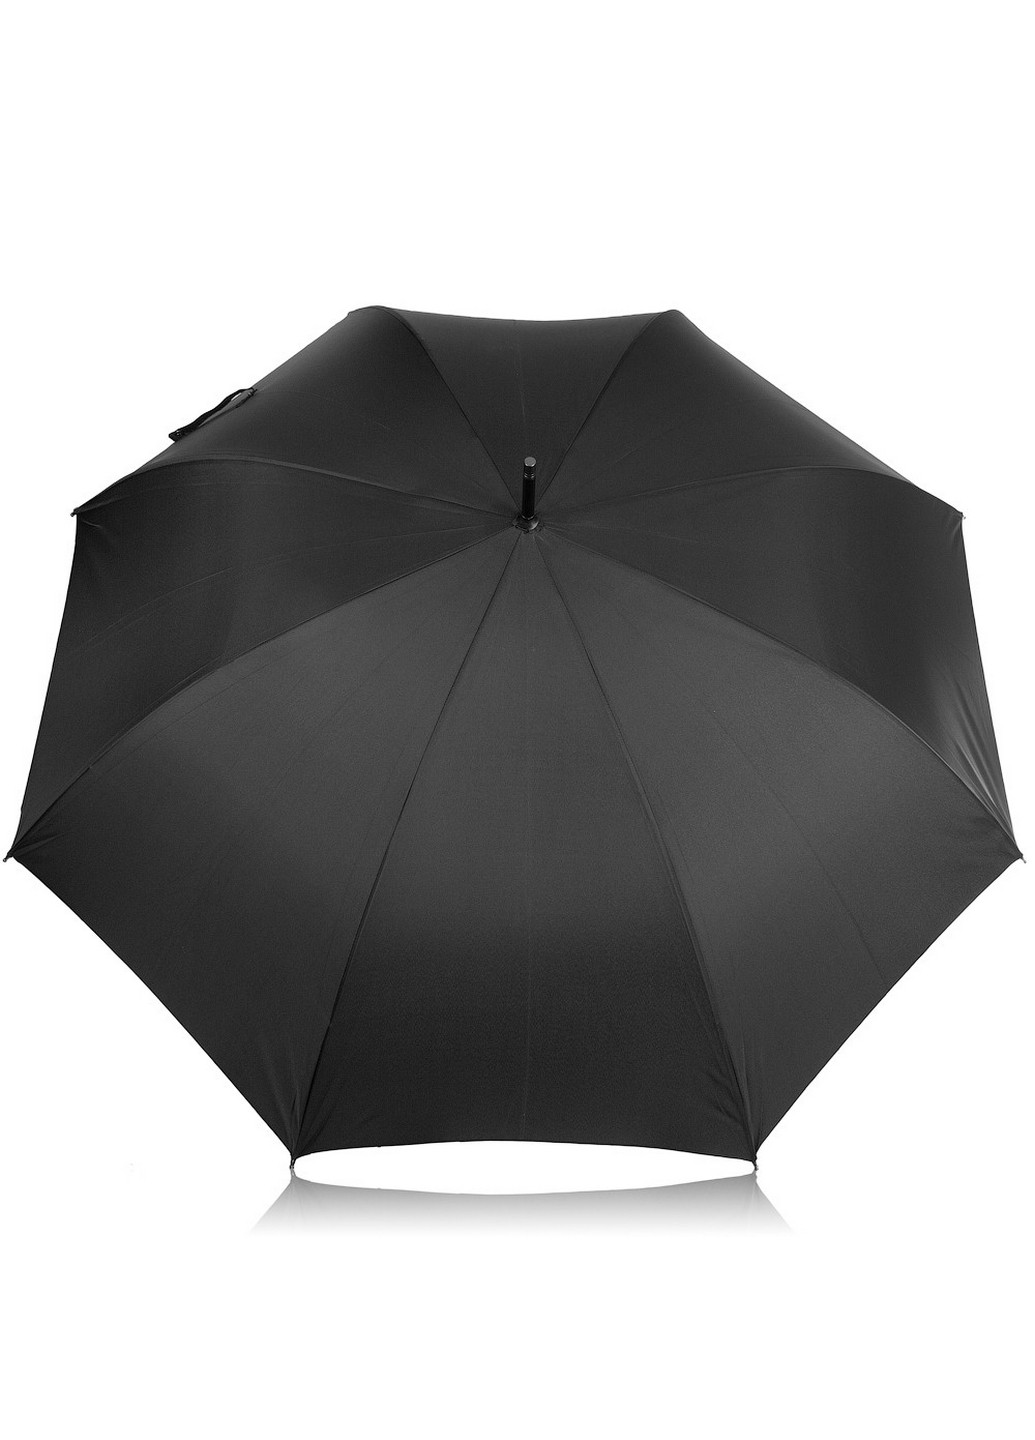 Мужской зонт-трость полуавтомат 122 см Trust (260330257)